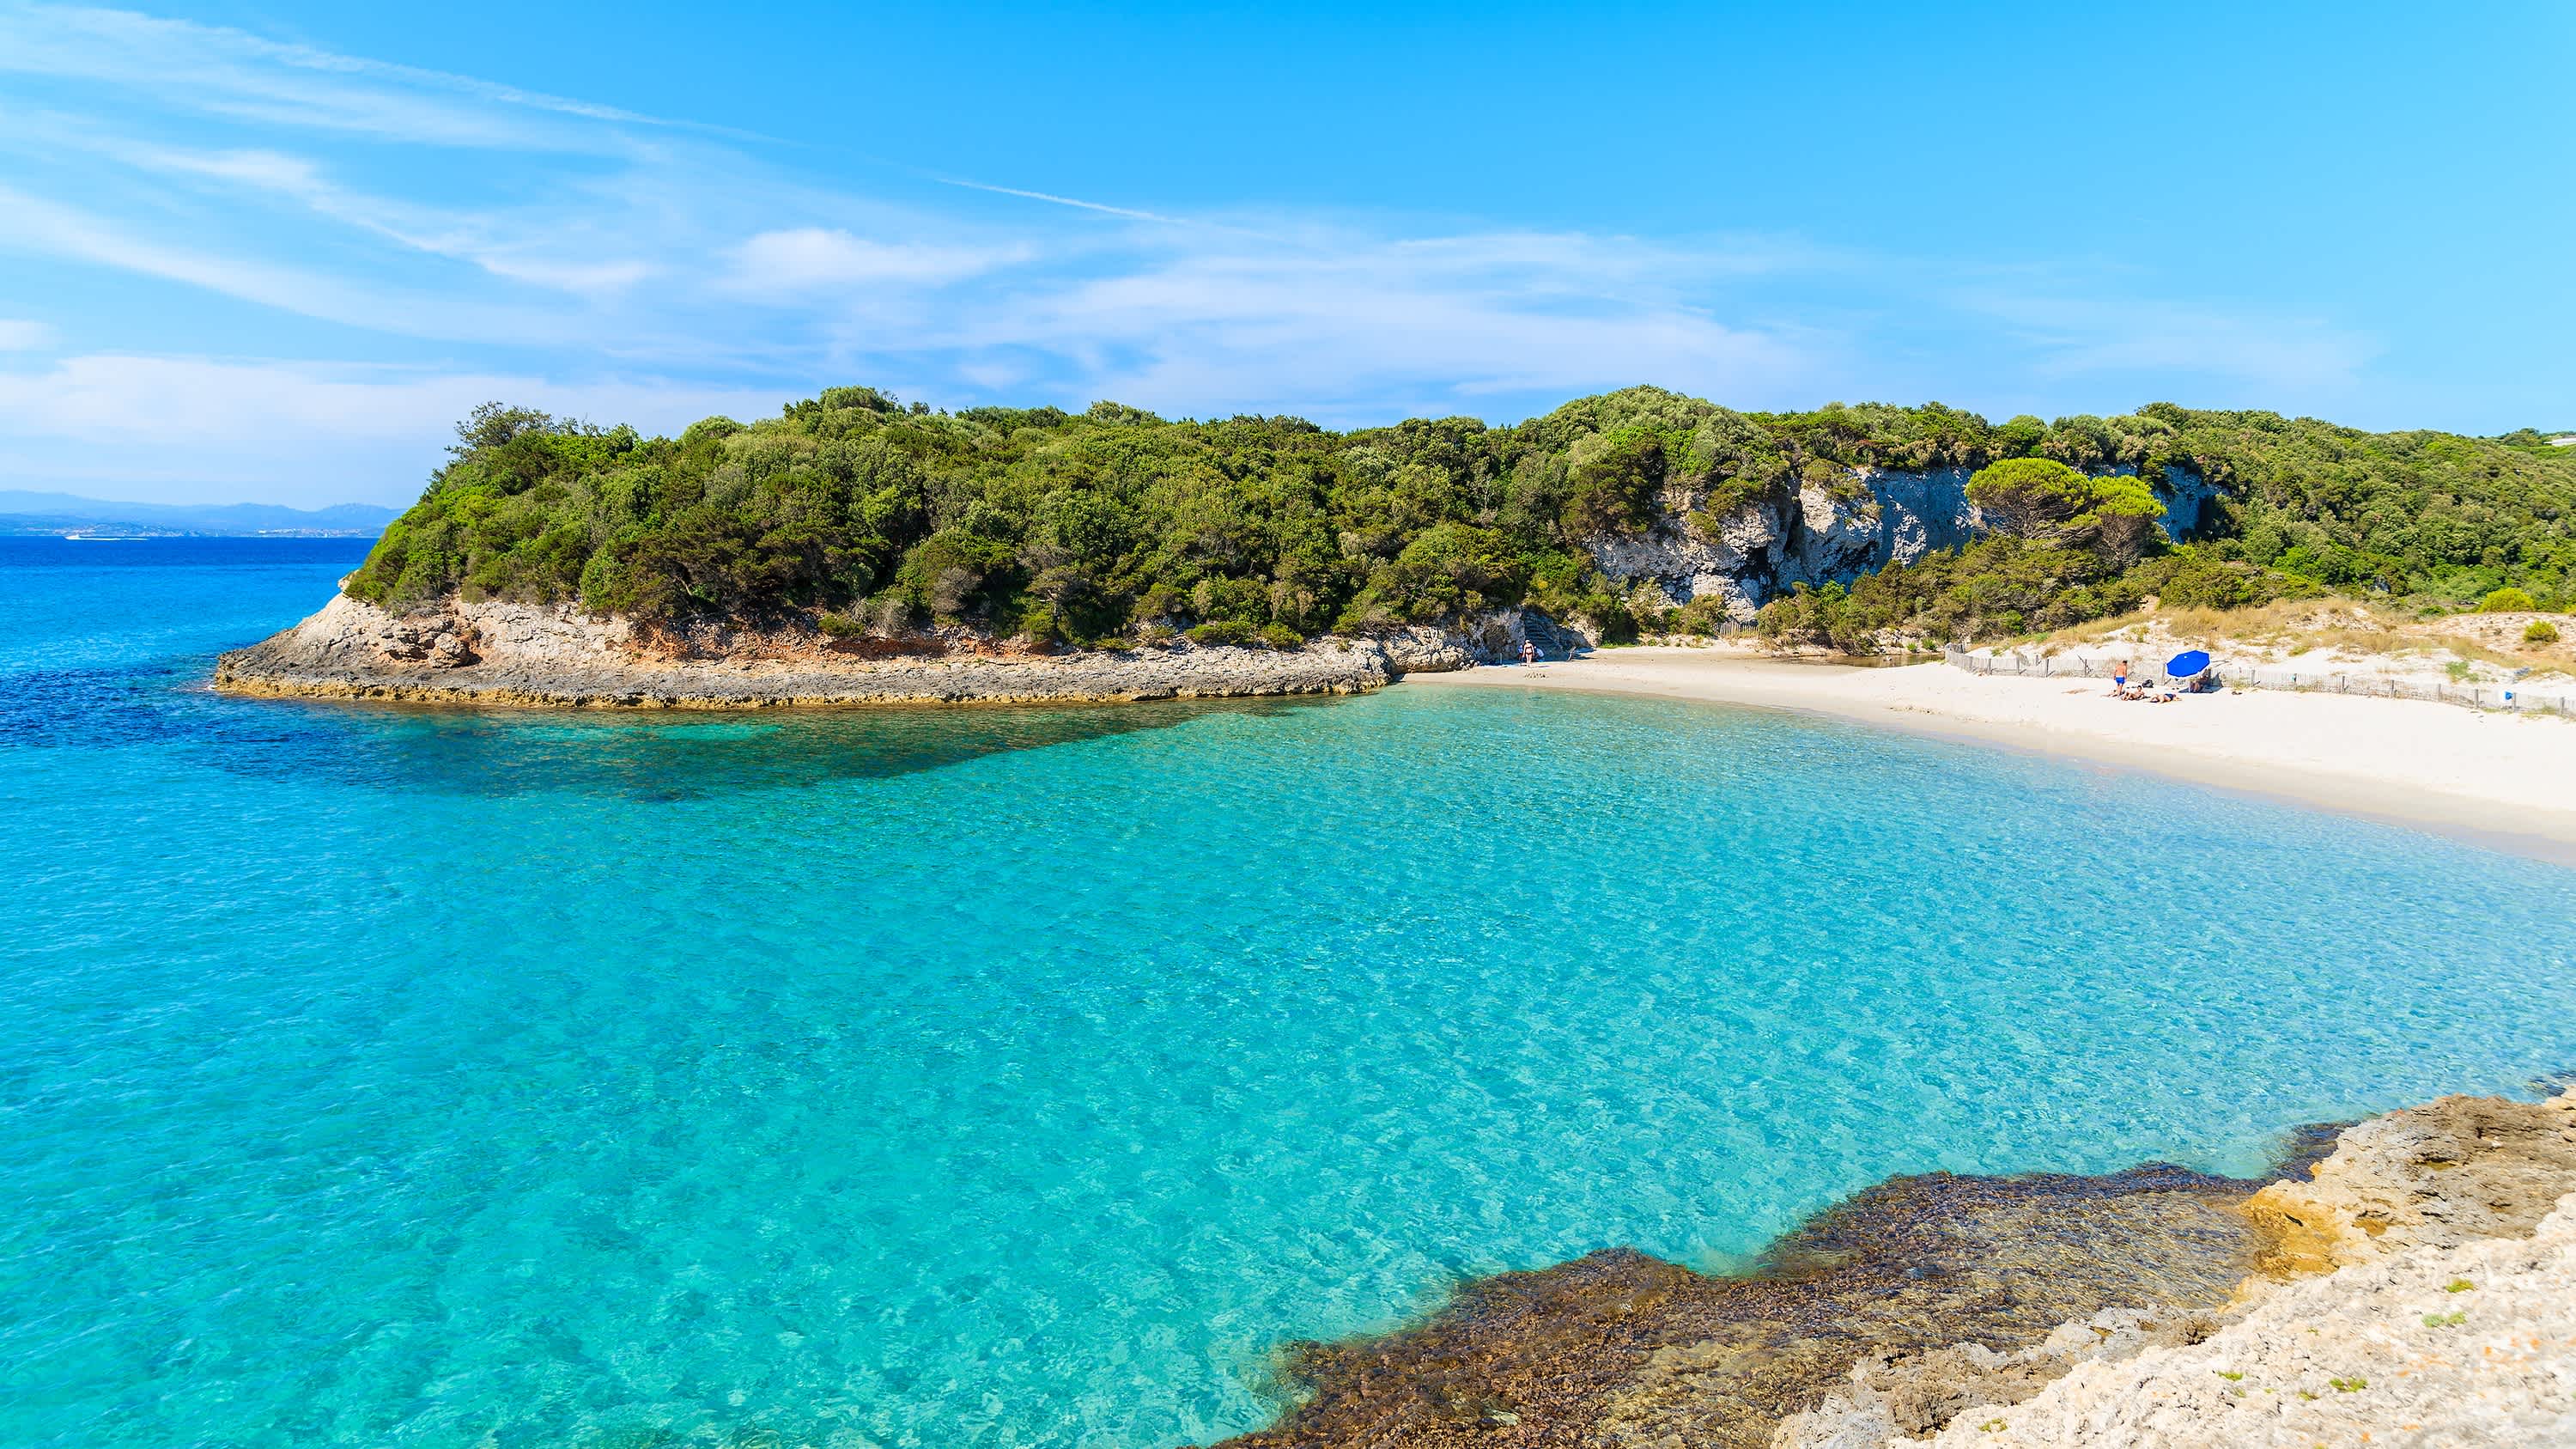 Vue de l'eau turquoise et du sable blanc entourés de rochers verdoyants sur la plage du Petit Sperone en Corse, France